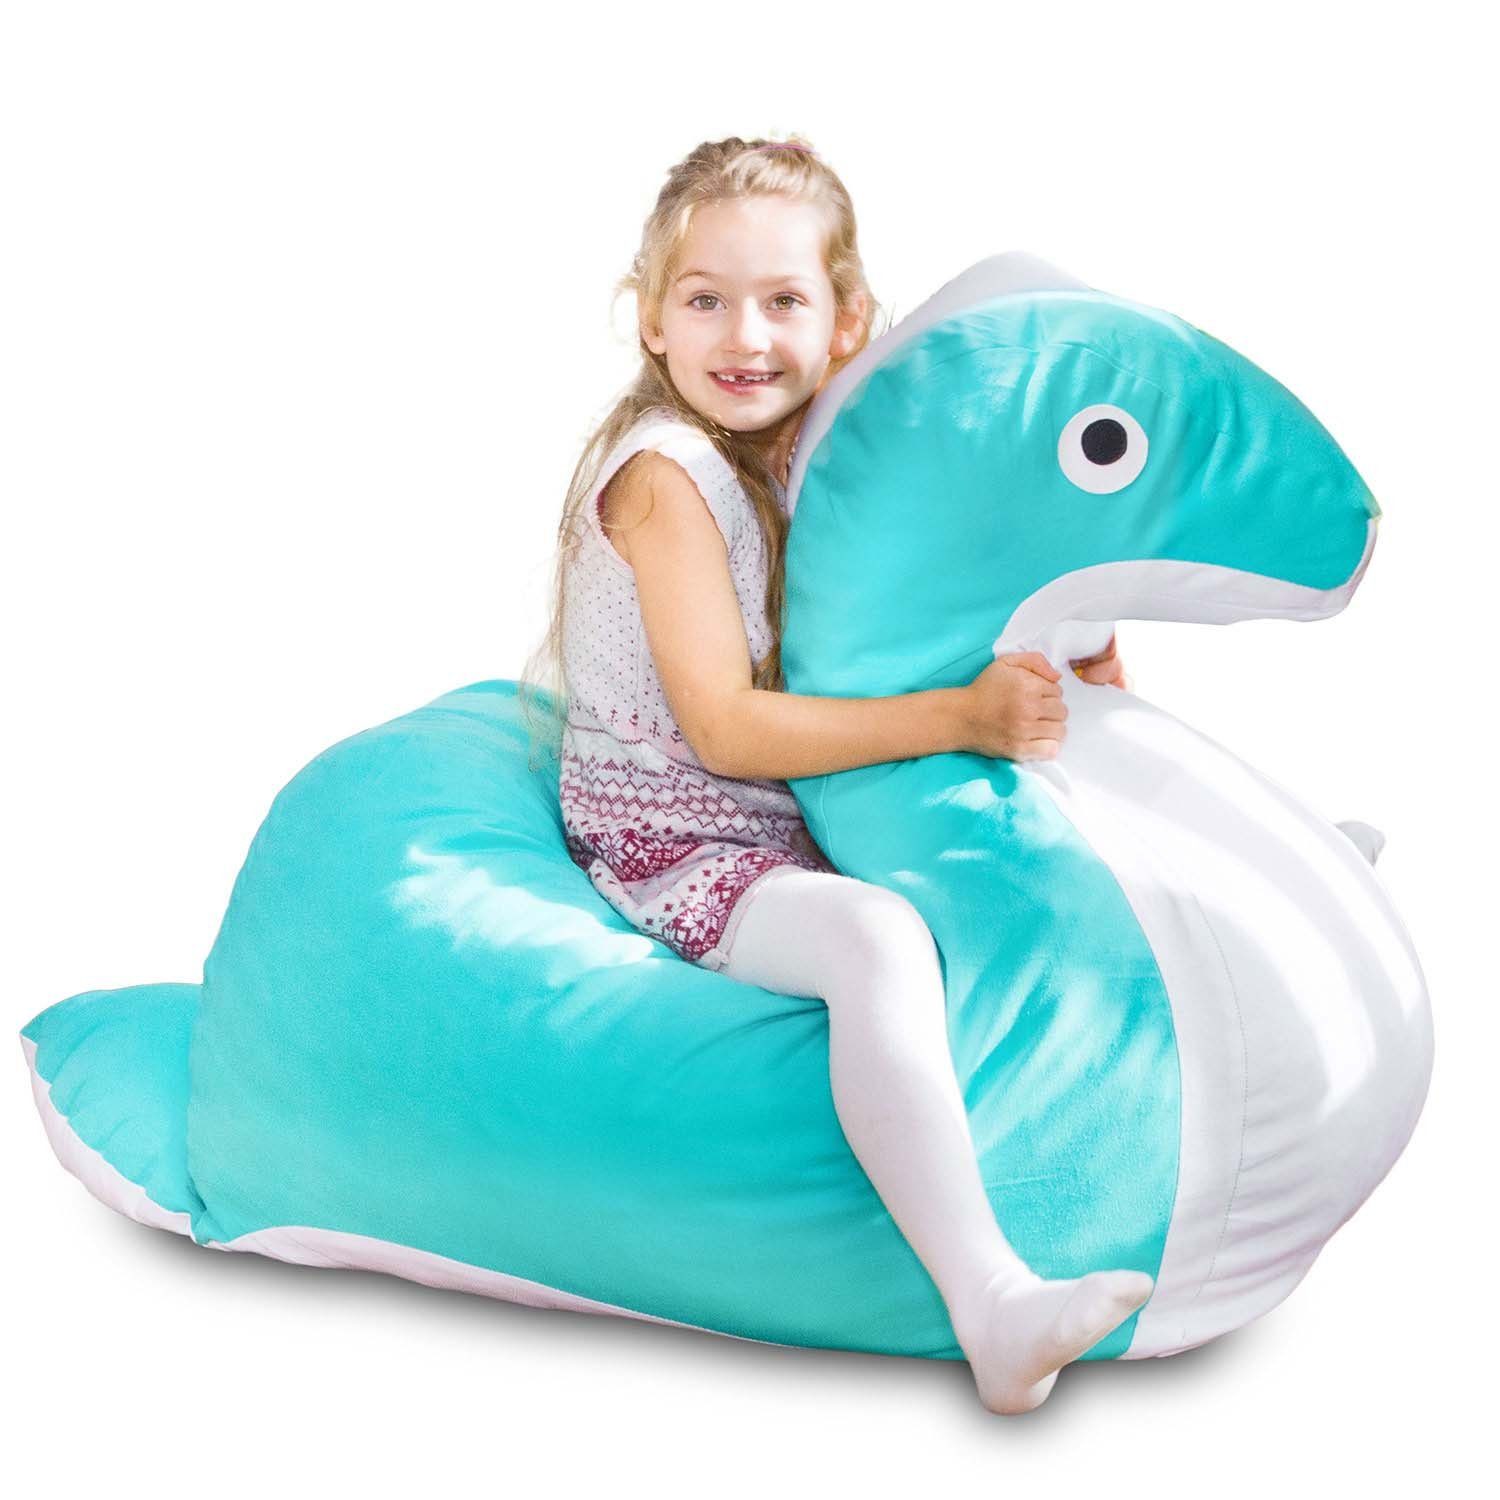 (Sitzkissen Kinder, für Sitzkissen Tierform Sitzsack Nessie Kindermöbel), Baumwollbezug Kindersitzsack Smoothy